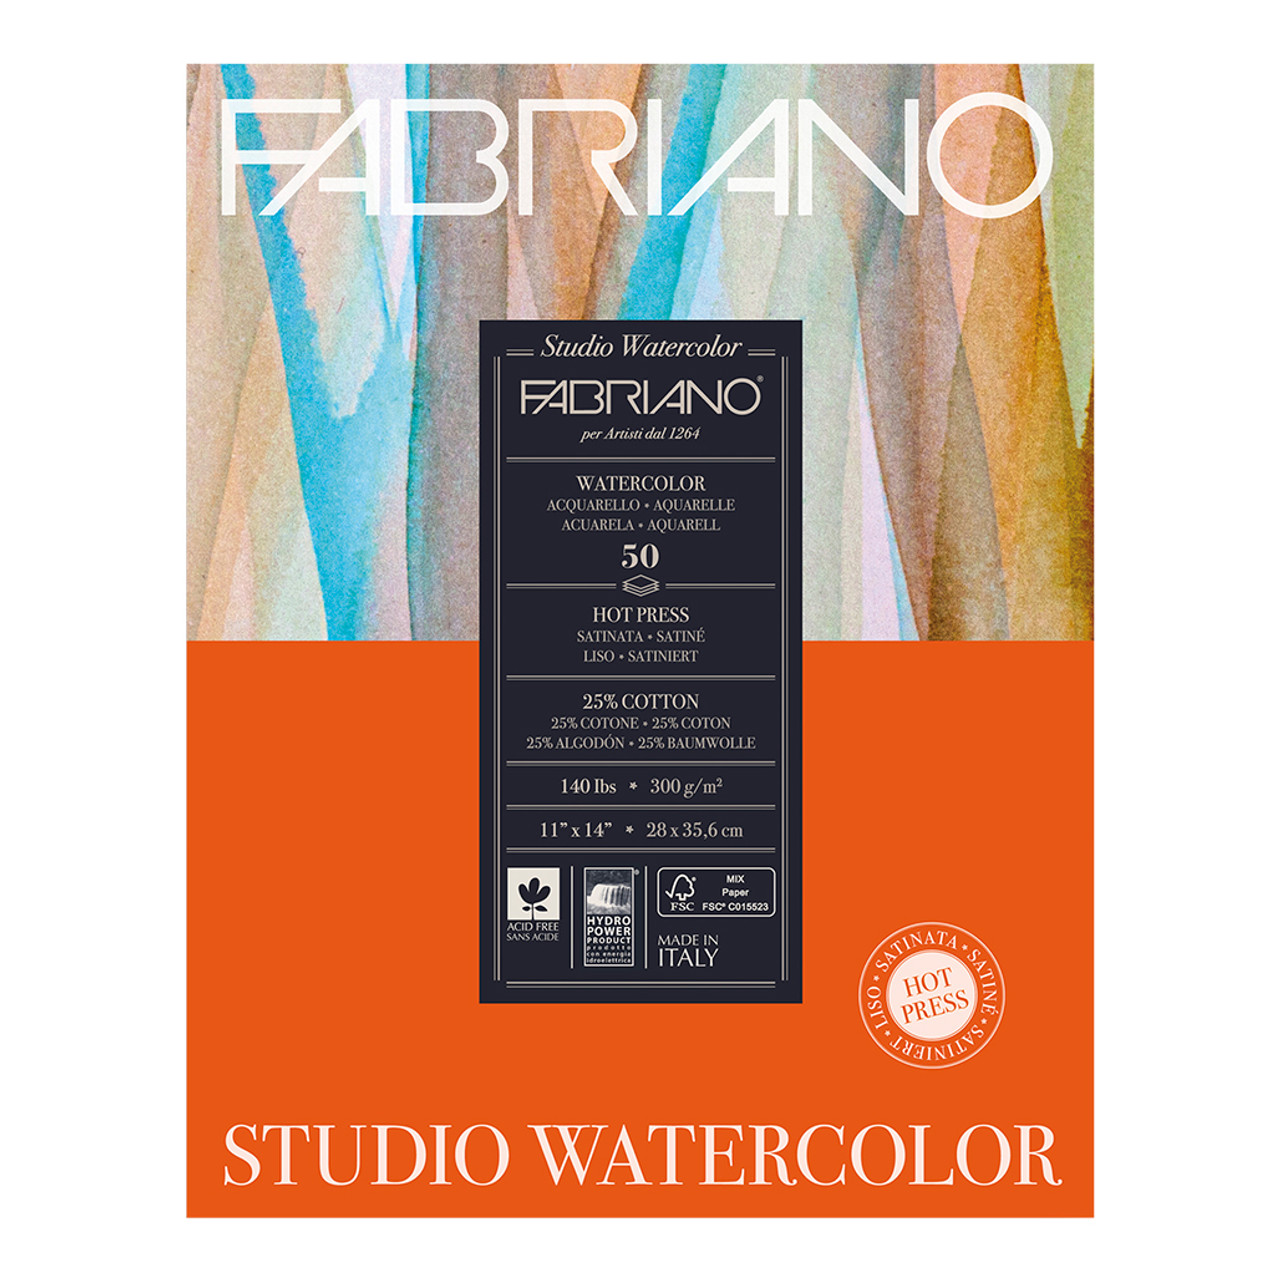 Fabriano Studio Watercolor Pads